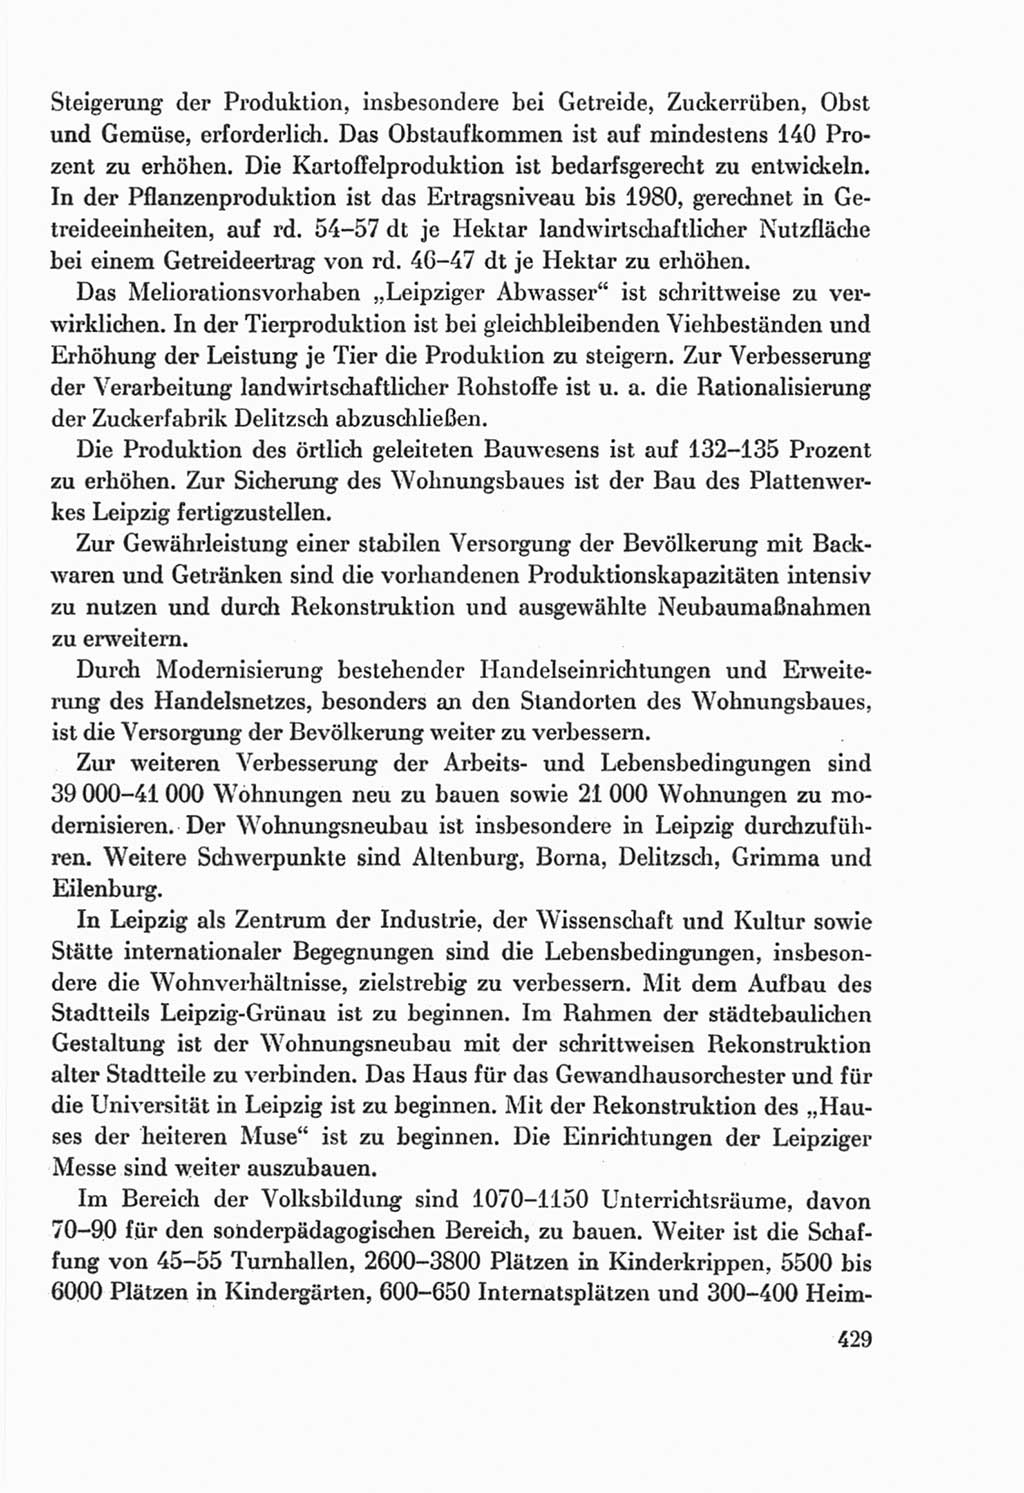 Protokoll der Verhandlungen des Ⅸ. Parteitages der Sozialistischen Einheitspartei Deutschlands (SED) [Deutsche Demokratische Republik (DDR)] 1976, Band 2, Seite 429 (Prot. Verh. Ⅸ. PT SED DDR 1976, Bd. 2, S. 429)